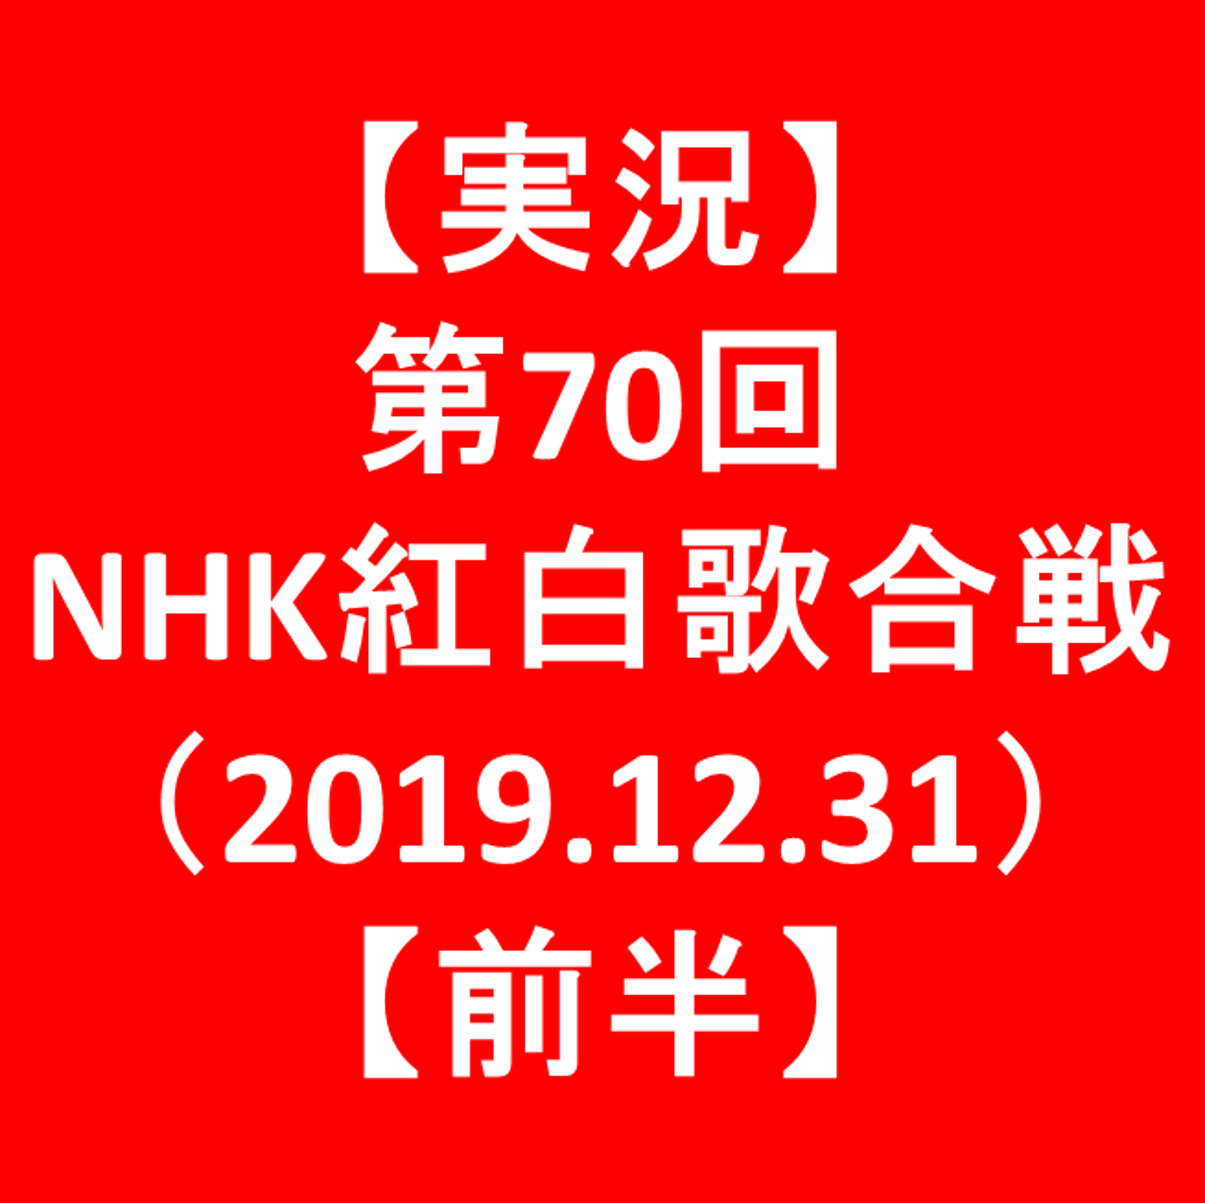 【実況】第70回NHK紅白歌合戦2019【前半】アイキャッチ1205